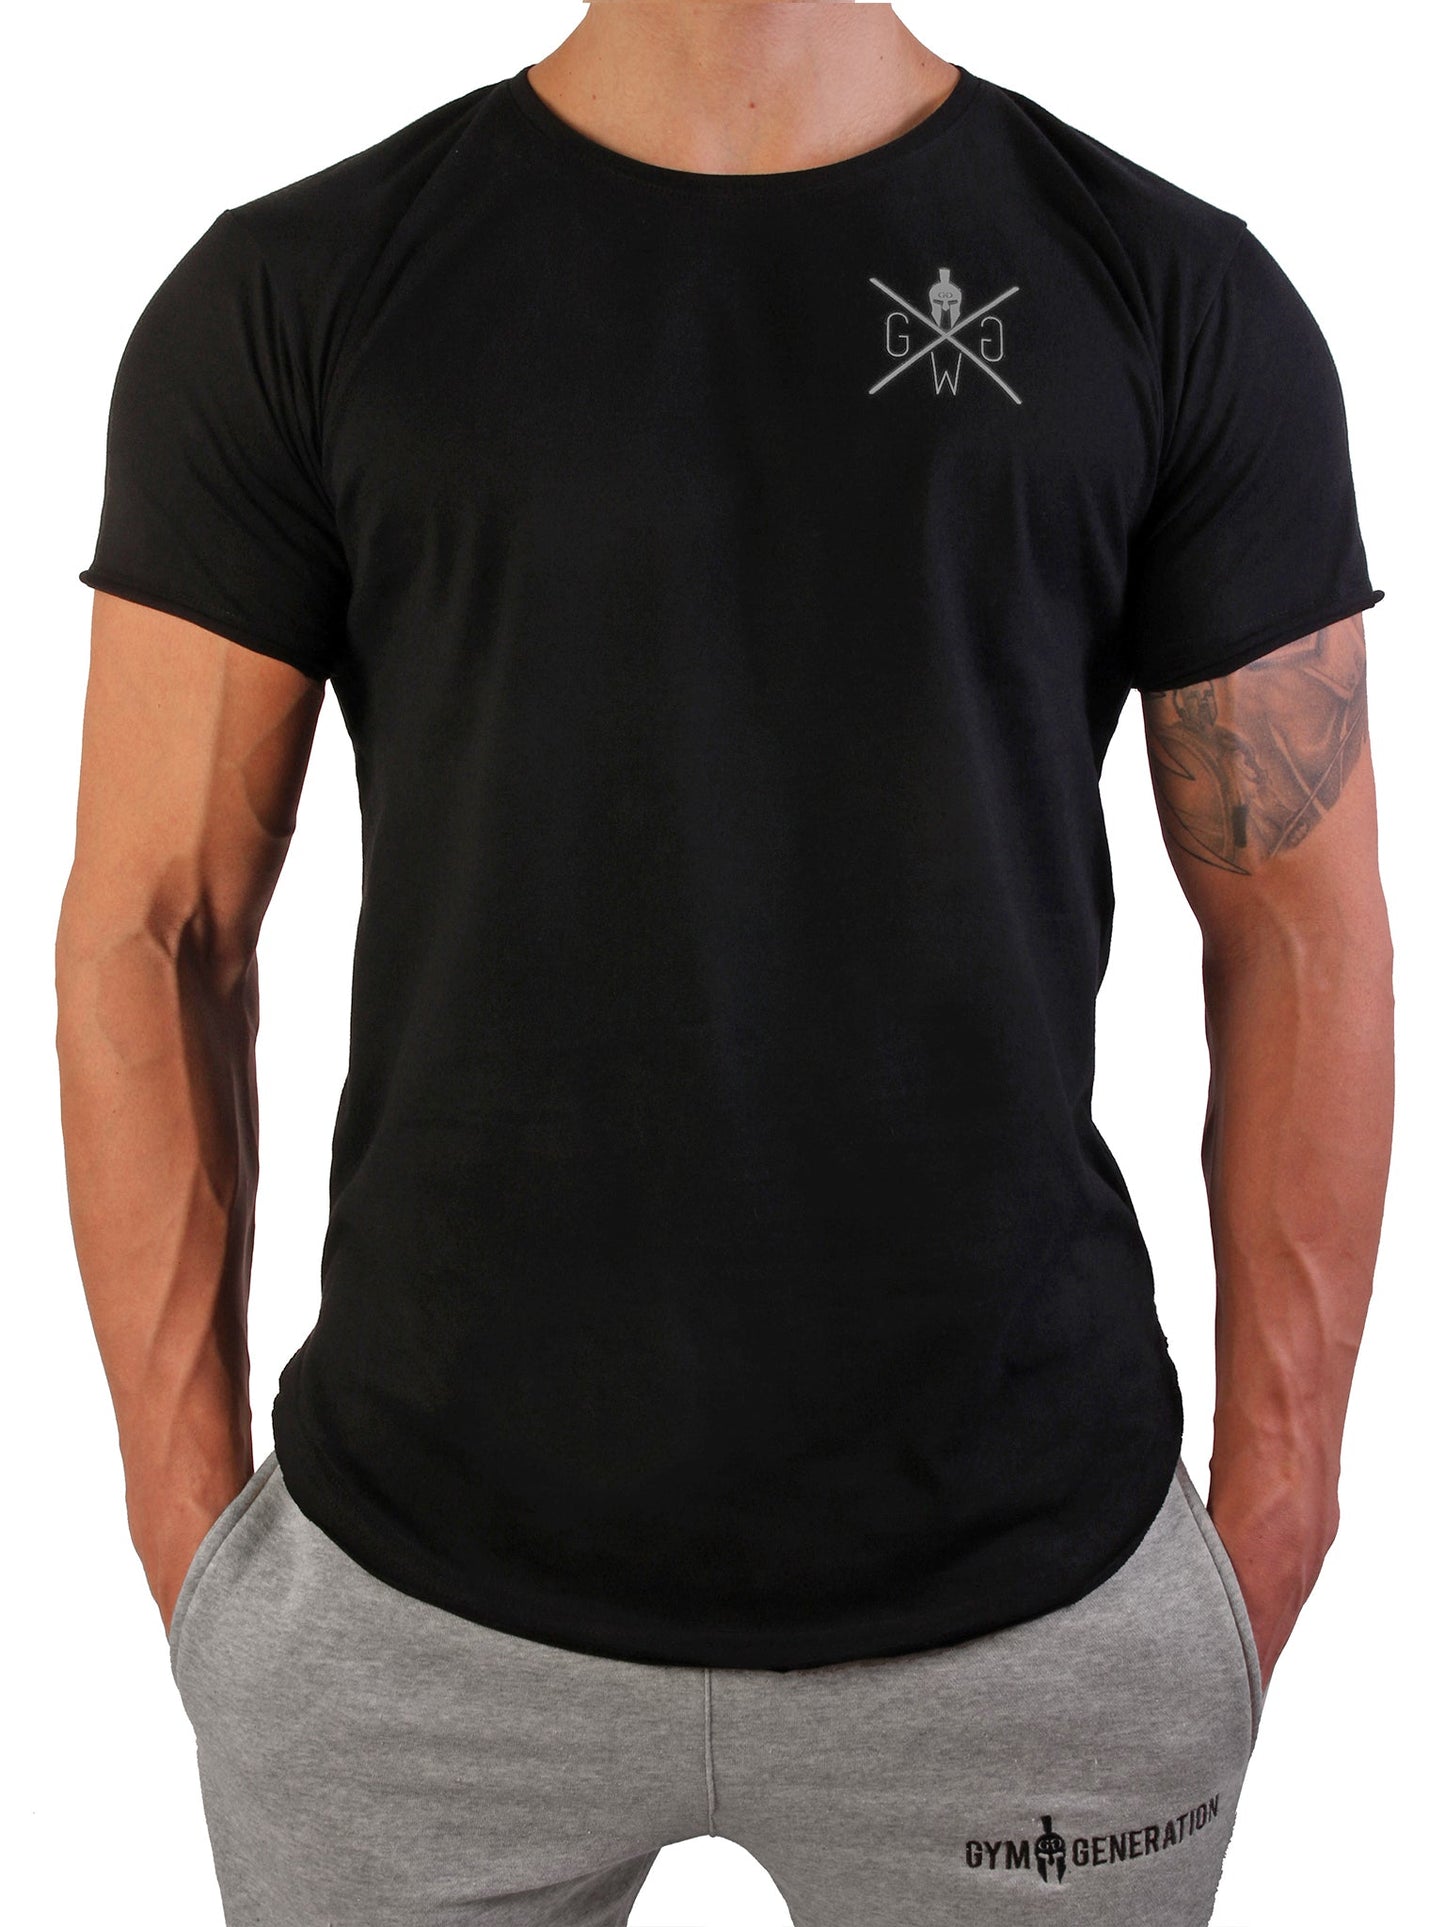 Gym Generation Spartan T-Shirt mit ikonischem Warrior-Logo, symbolisiert Unbesiegbarkeit und Entschlossenheit.